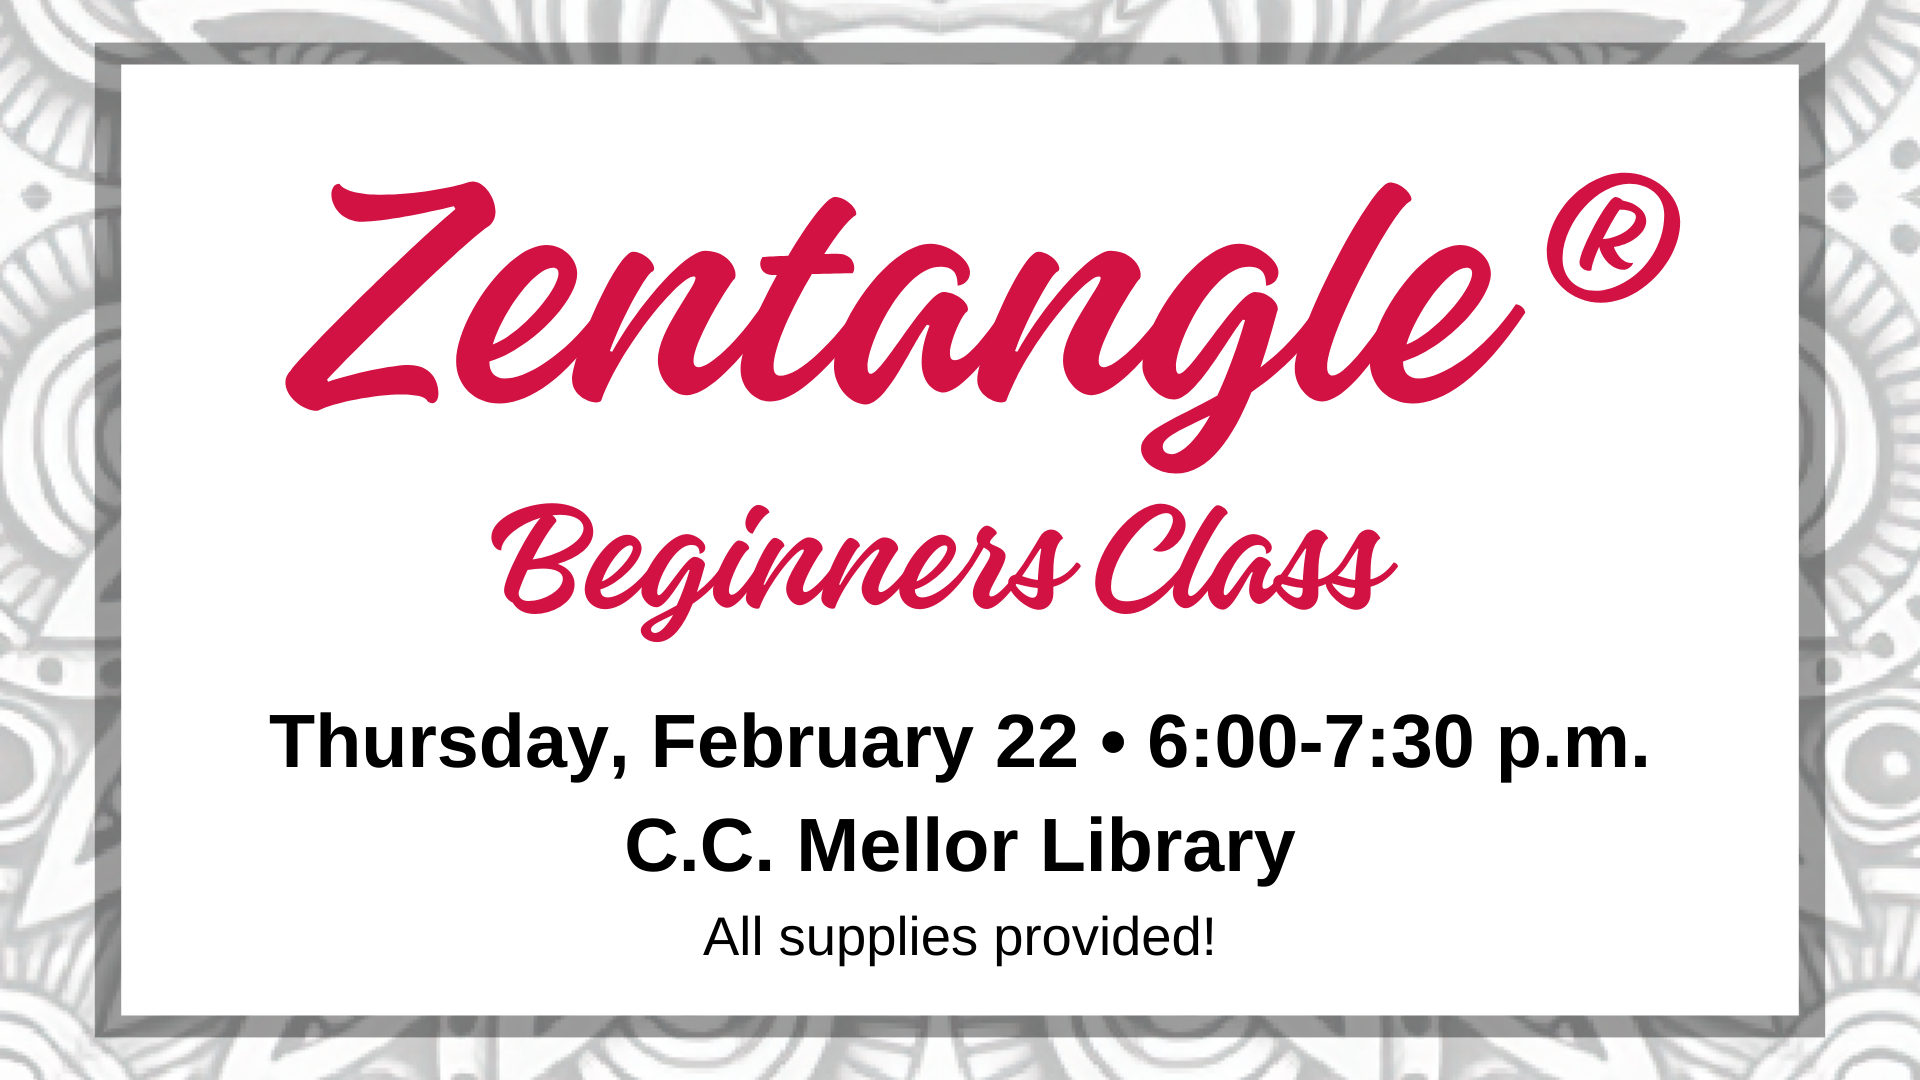 Zentangle Beginners Class